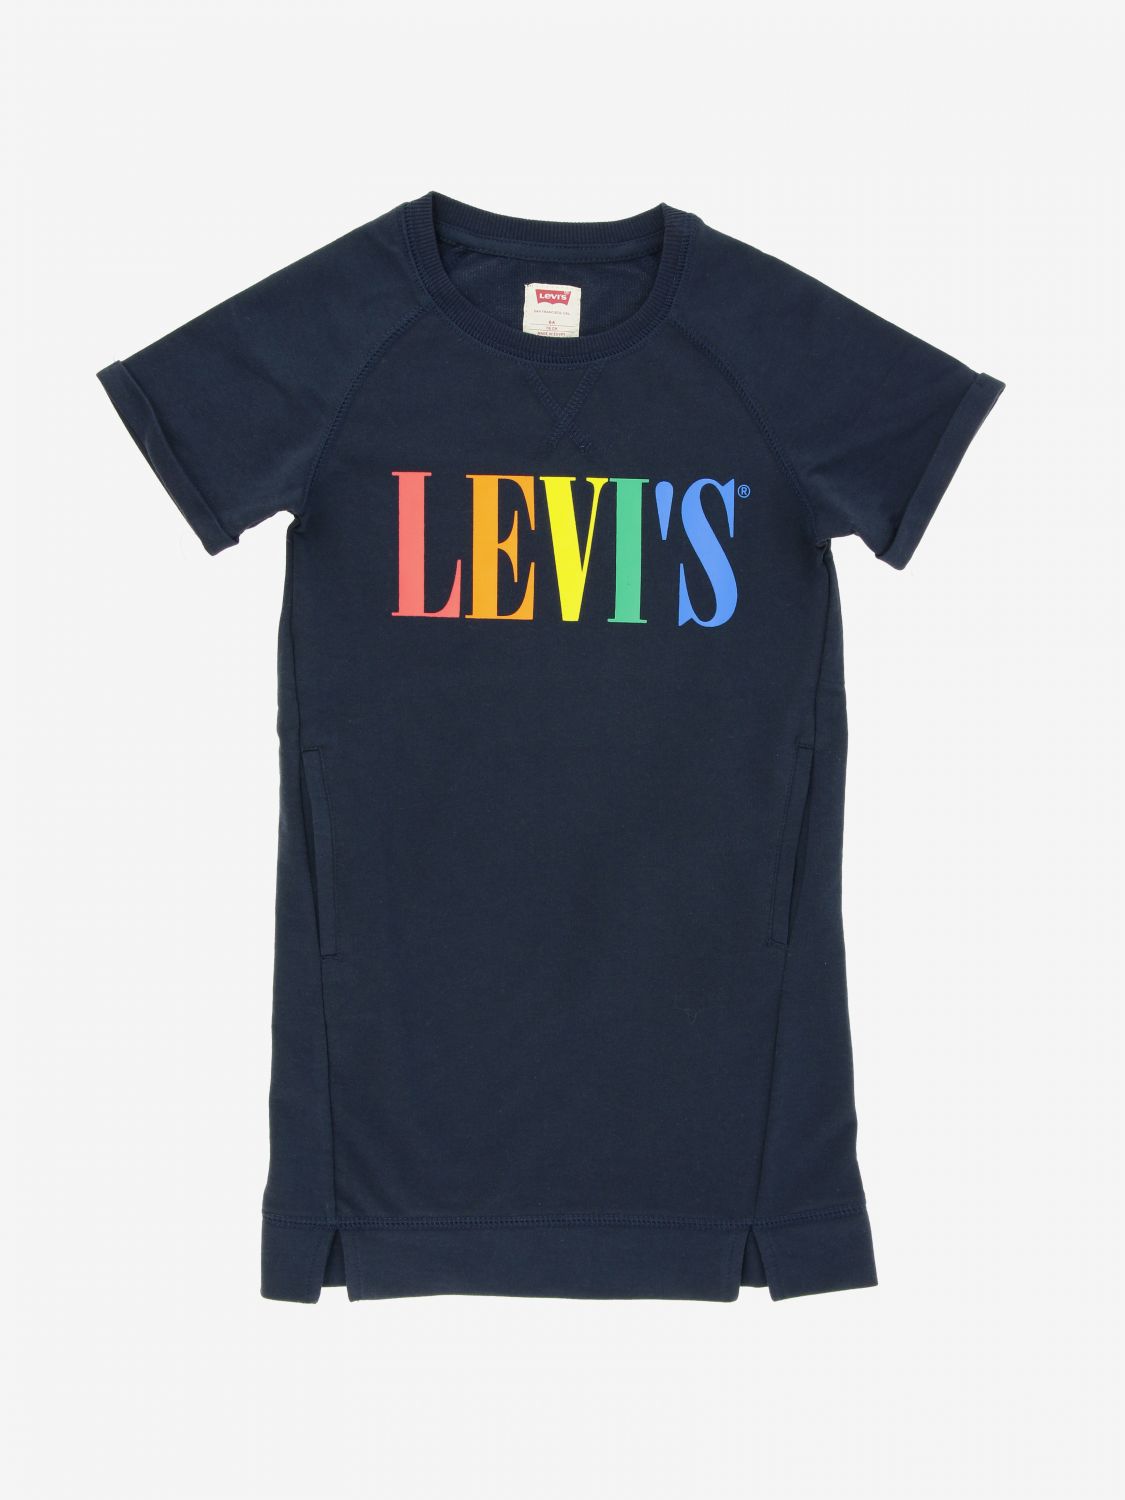 levis kids wear